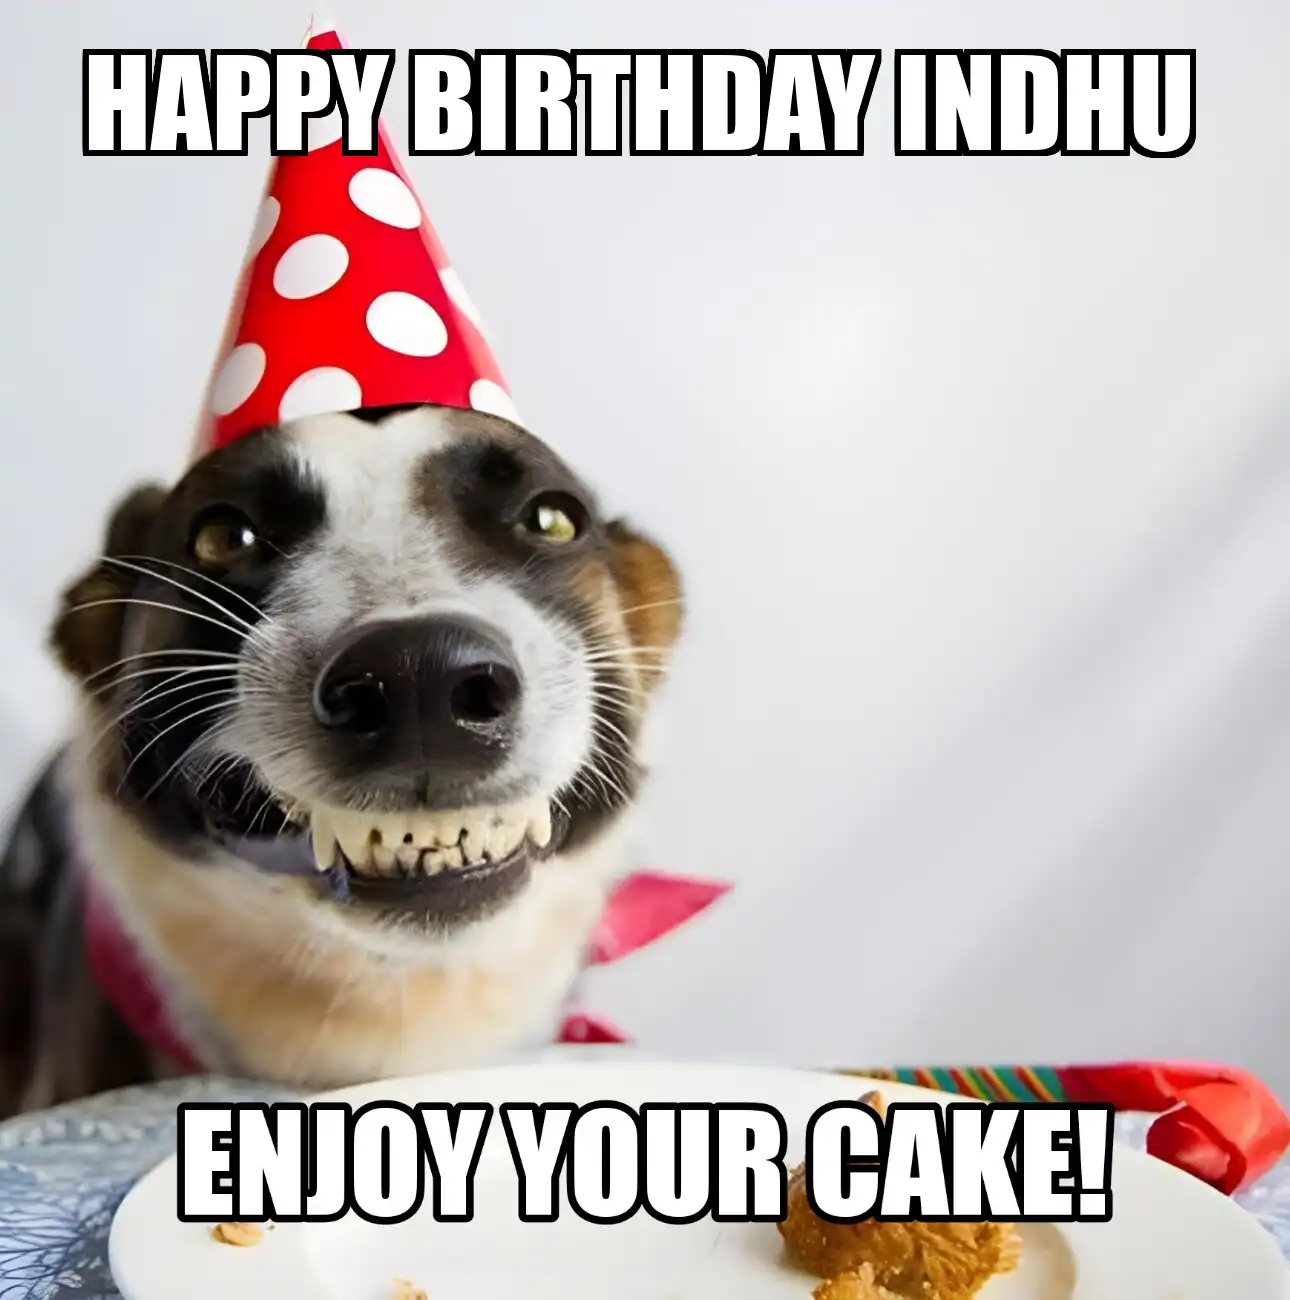 Happy Birthday Indhu Enjoy Your Cake Dog Meme